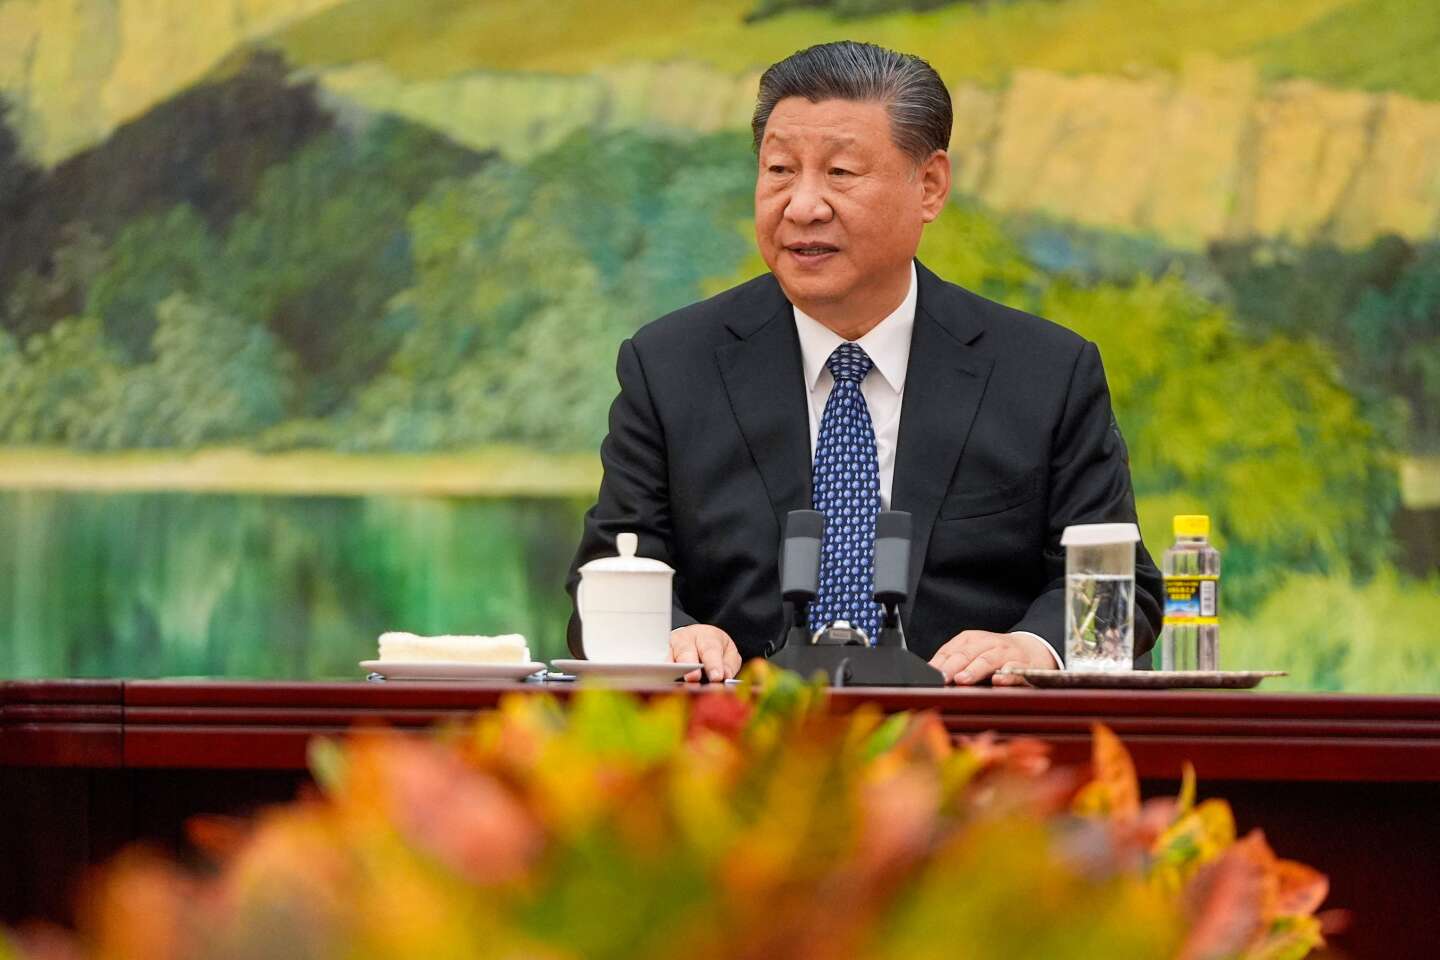 Regarder la vidéo « Xi Jinping, le prince rouge », en neuf épisodes sur France Inter